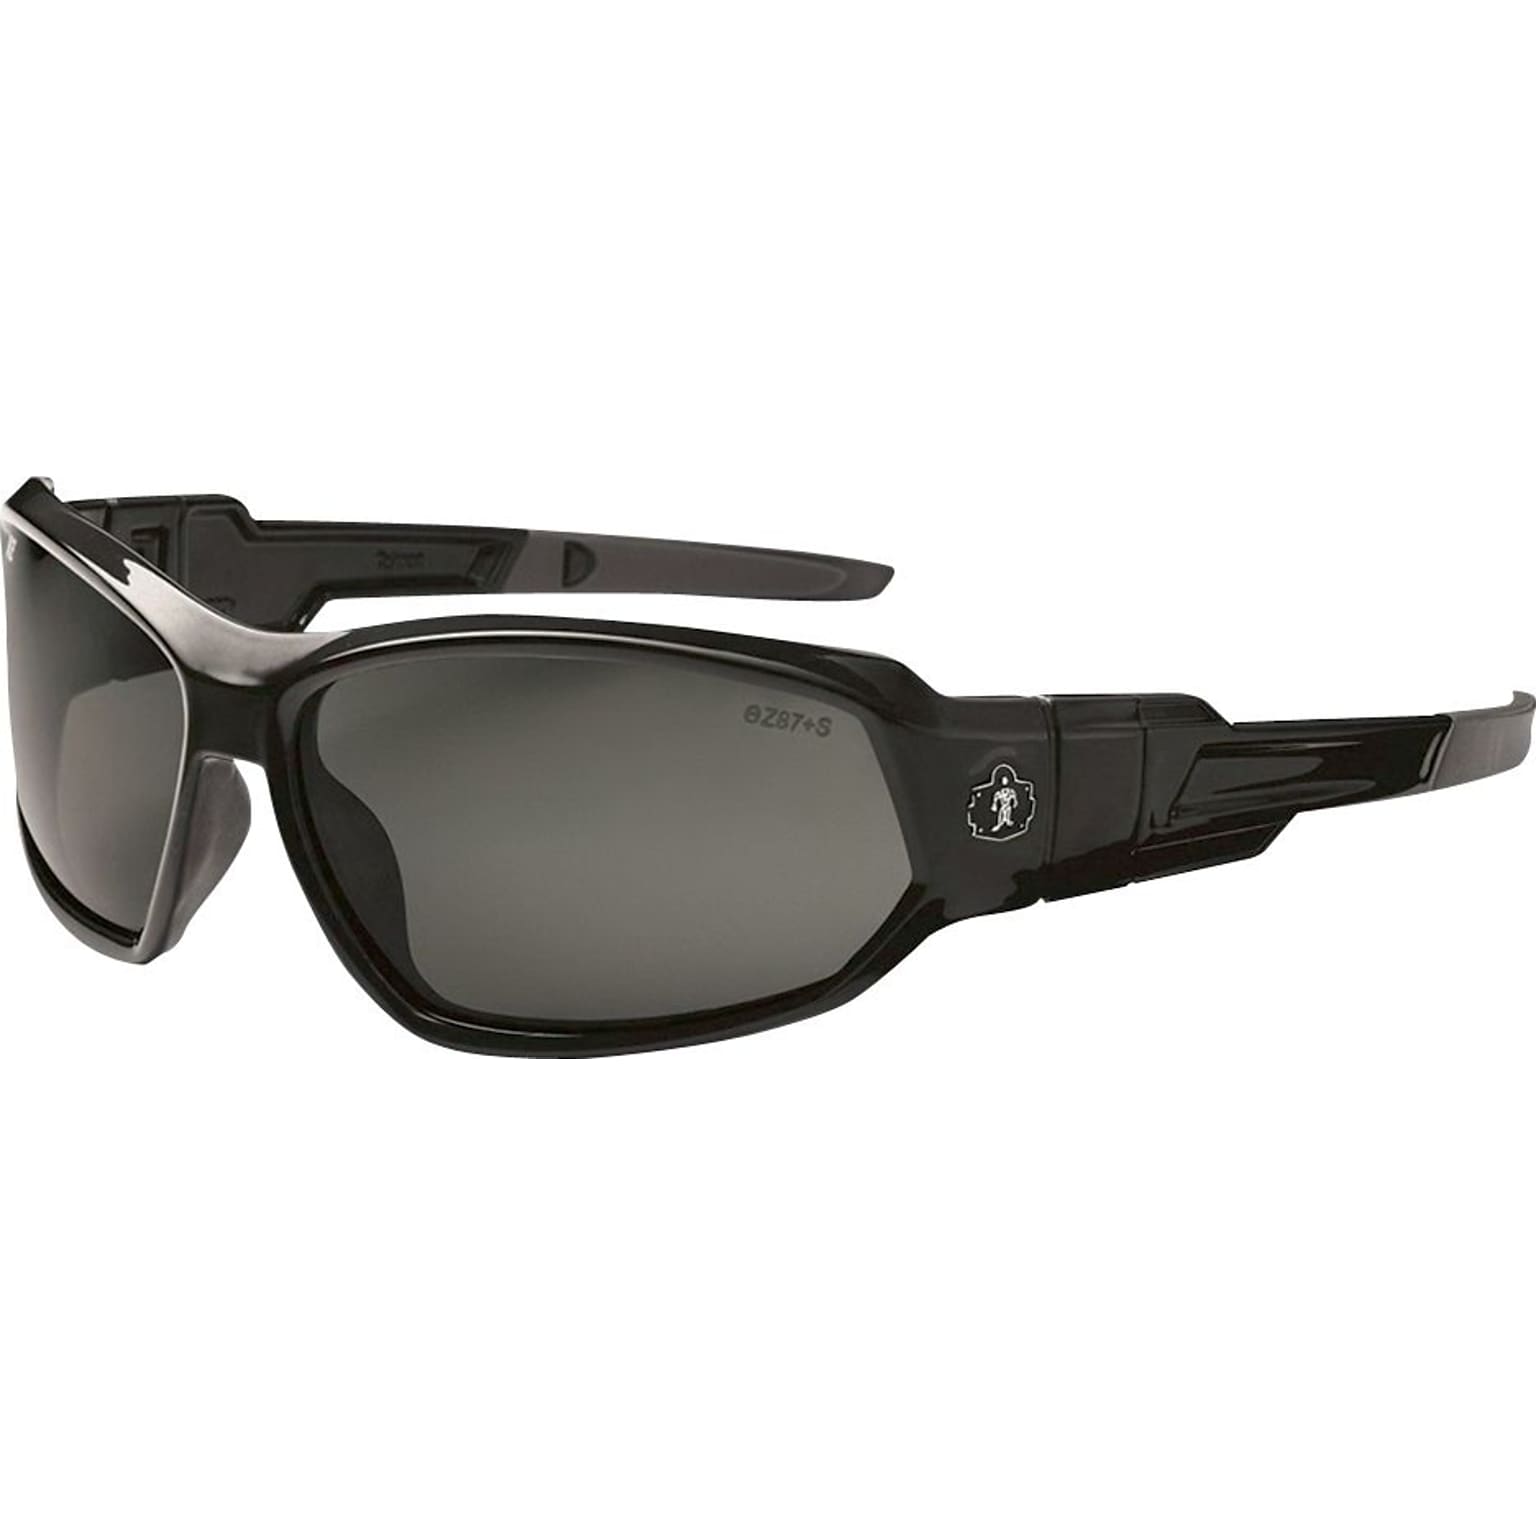 Ergodyne Skullerz® Loki Safety Glasses, Black/Smoke, Anti-Scratch/Fog